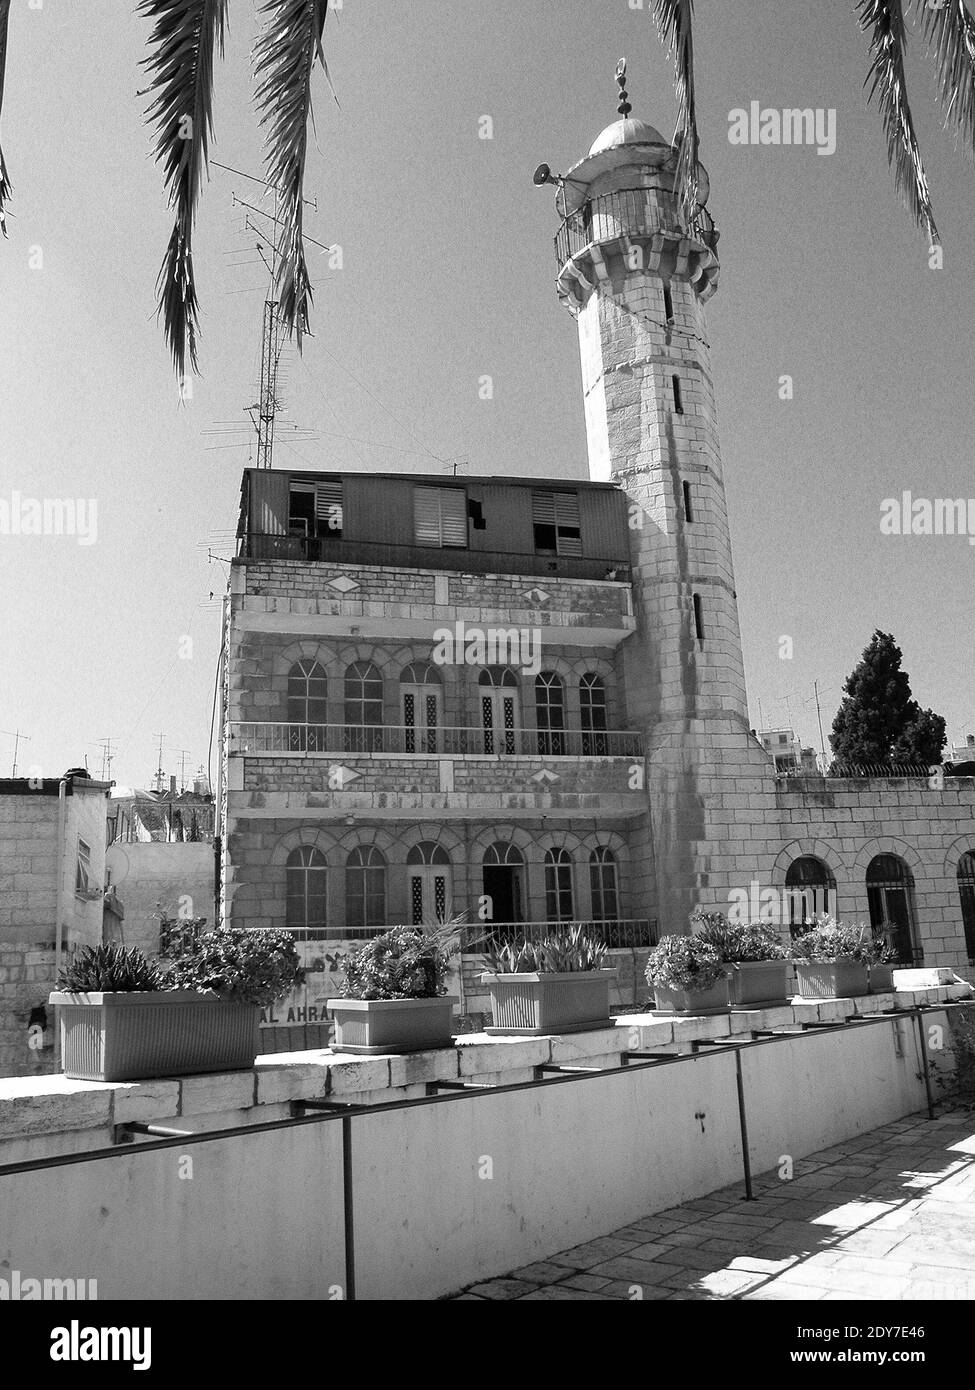 Le haut minaret de la mosquée blanche situé en face de l'Hospice autrichien dans le quartier musulman de Jérusalem. Palestine Israël Stock Photo